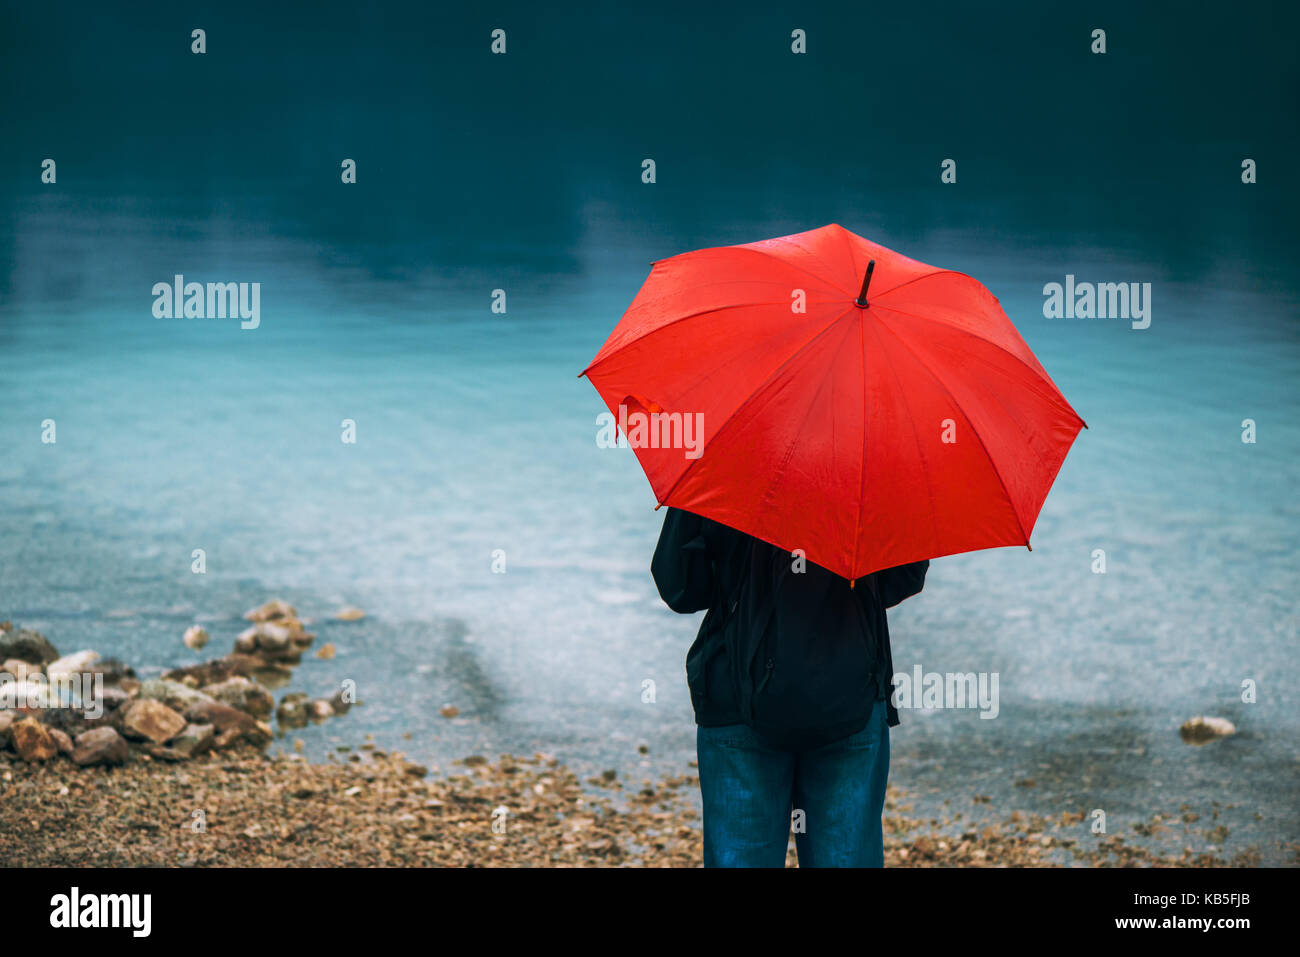 Femme avec parapluie rouge prévoit de la pluie en face d'un lac. triste et solitaire à la personne de sexe féminin dans la distance. Banque D'Images